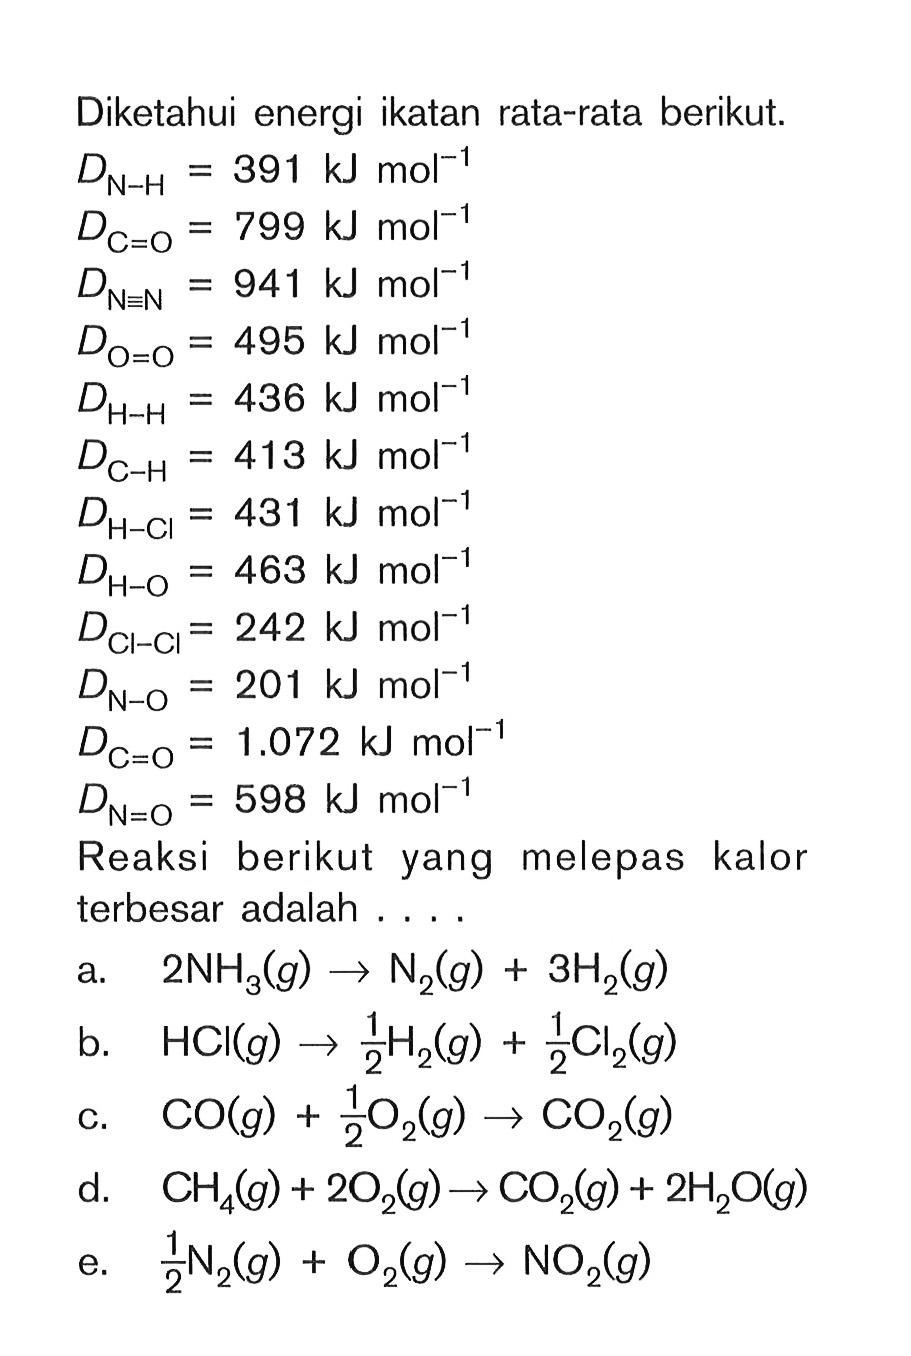 Diketahui energi ikatan rata-rata berikut. DN-H = 391 kj mol^(-1) DC=O = 799 kj mol^(-1) DN=N = 941 kj mol^(-1) D0=O = 495 kj mol^(-1) DH-H = 436 kj mol^(-1) DC-H = 413 kj mol^(-1) DH-HCl = 431 kj mol^(-1) DH-O = 463 kj mol^(-1) DCl-Cl = 242 kj mol^(-1) DCl-Cl = 242 kj mol^(-1) DN-O = 2O1 kj mol^(-1) DC=O = 1.072 kj mol^(-1) DN=O = 598 kj mol^(-1) Reaksi berikut yang melepas kalor terbesar adalah . . . .